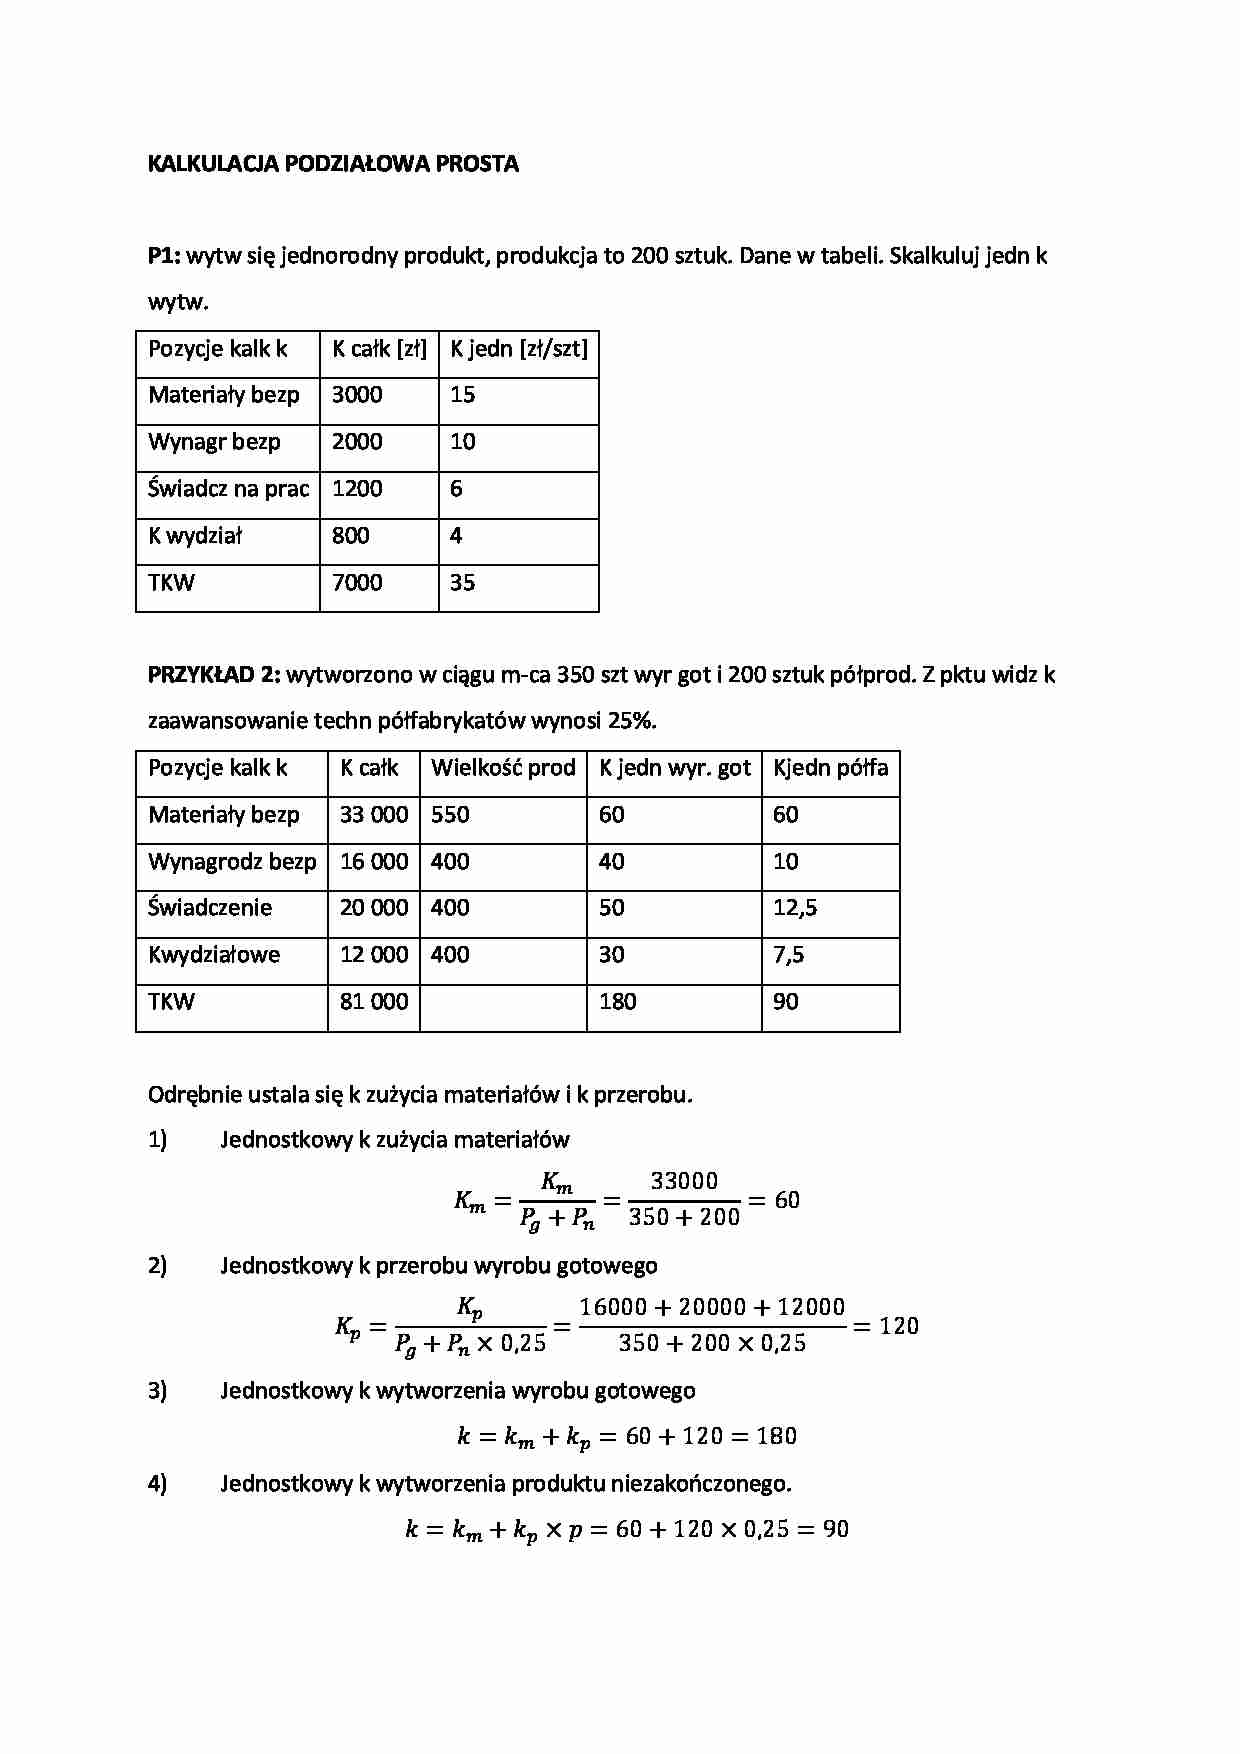 rachunek kosztów - Zadania na egzamin - Kalkulacja podziałowa prosta - strona 1